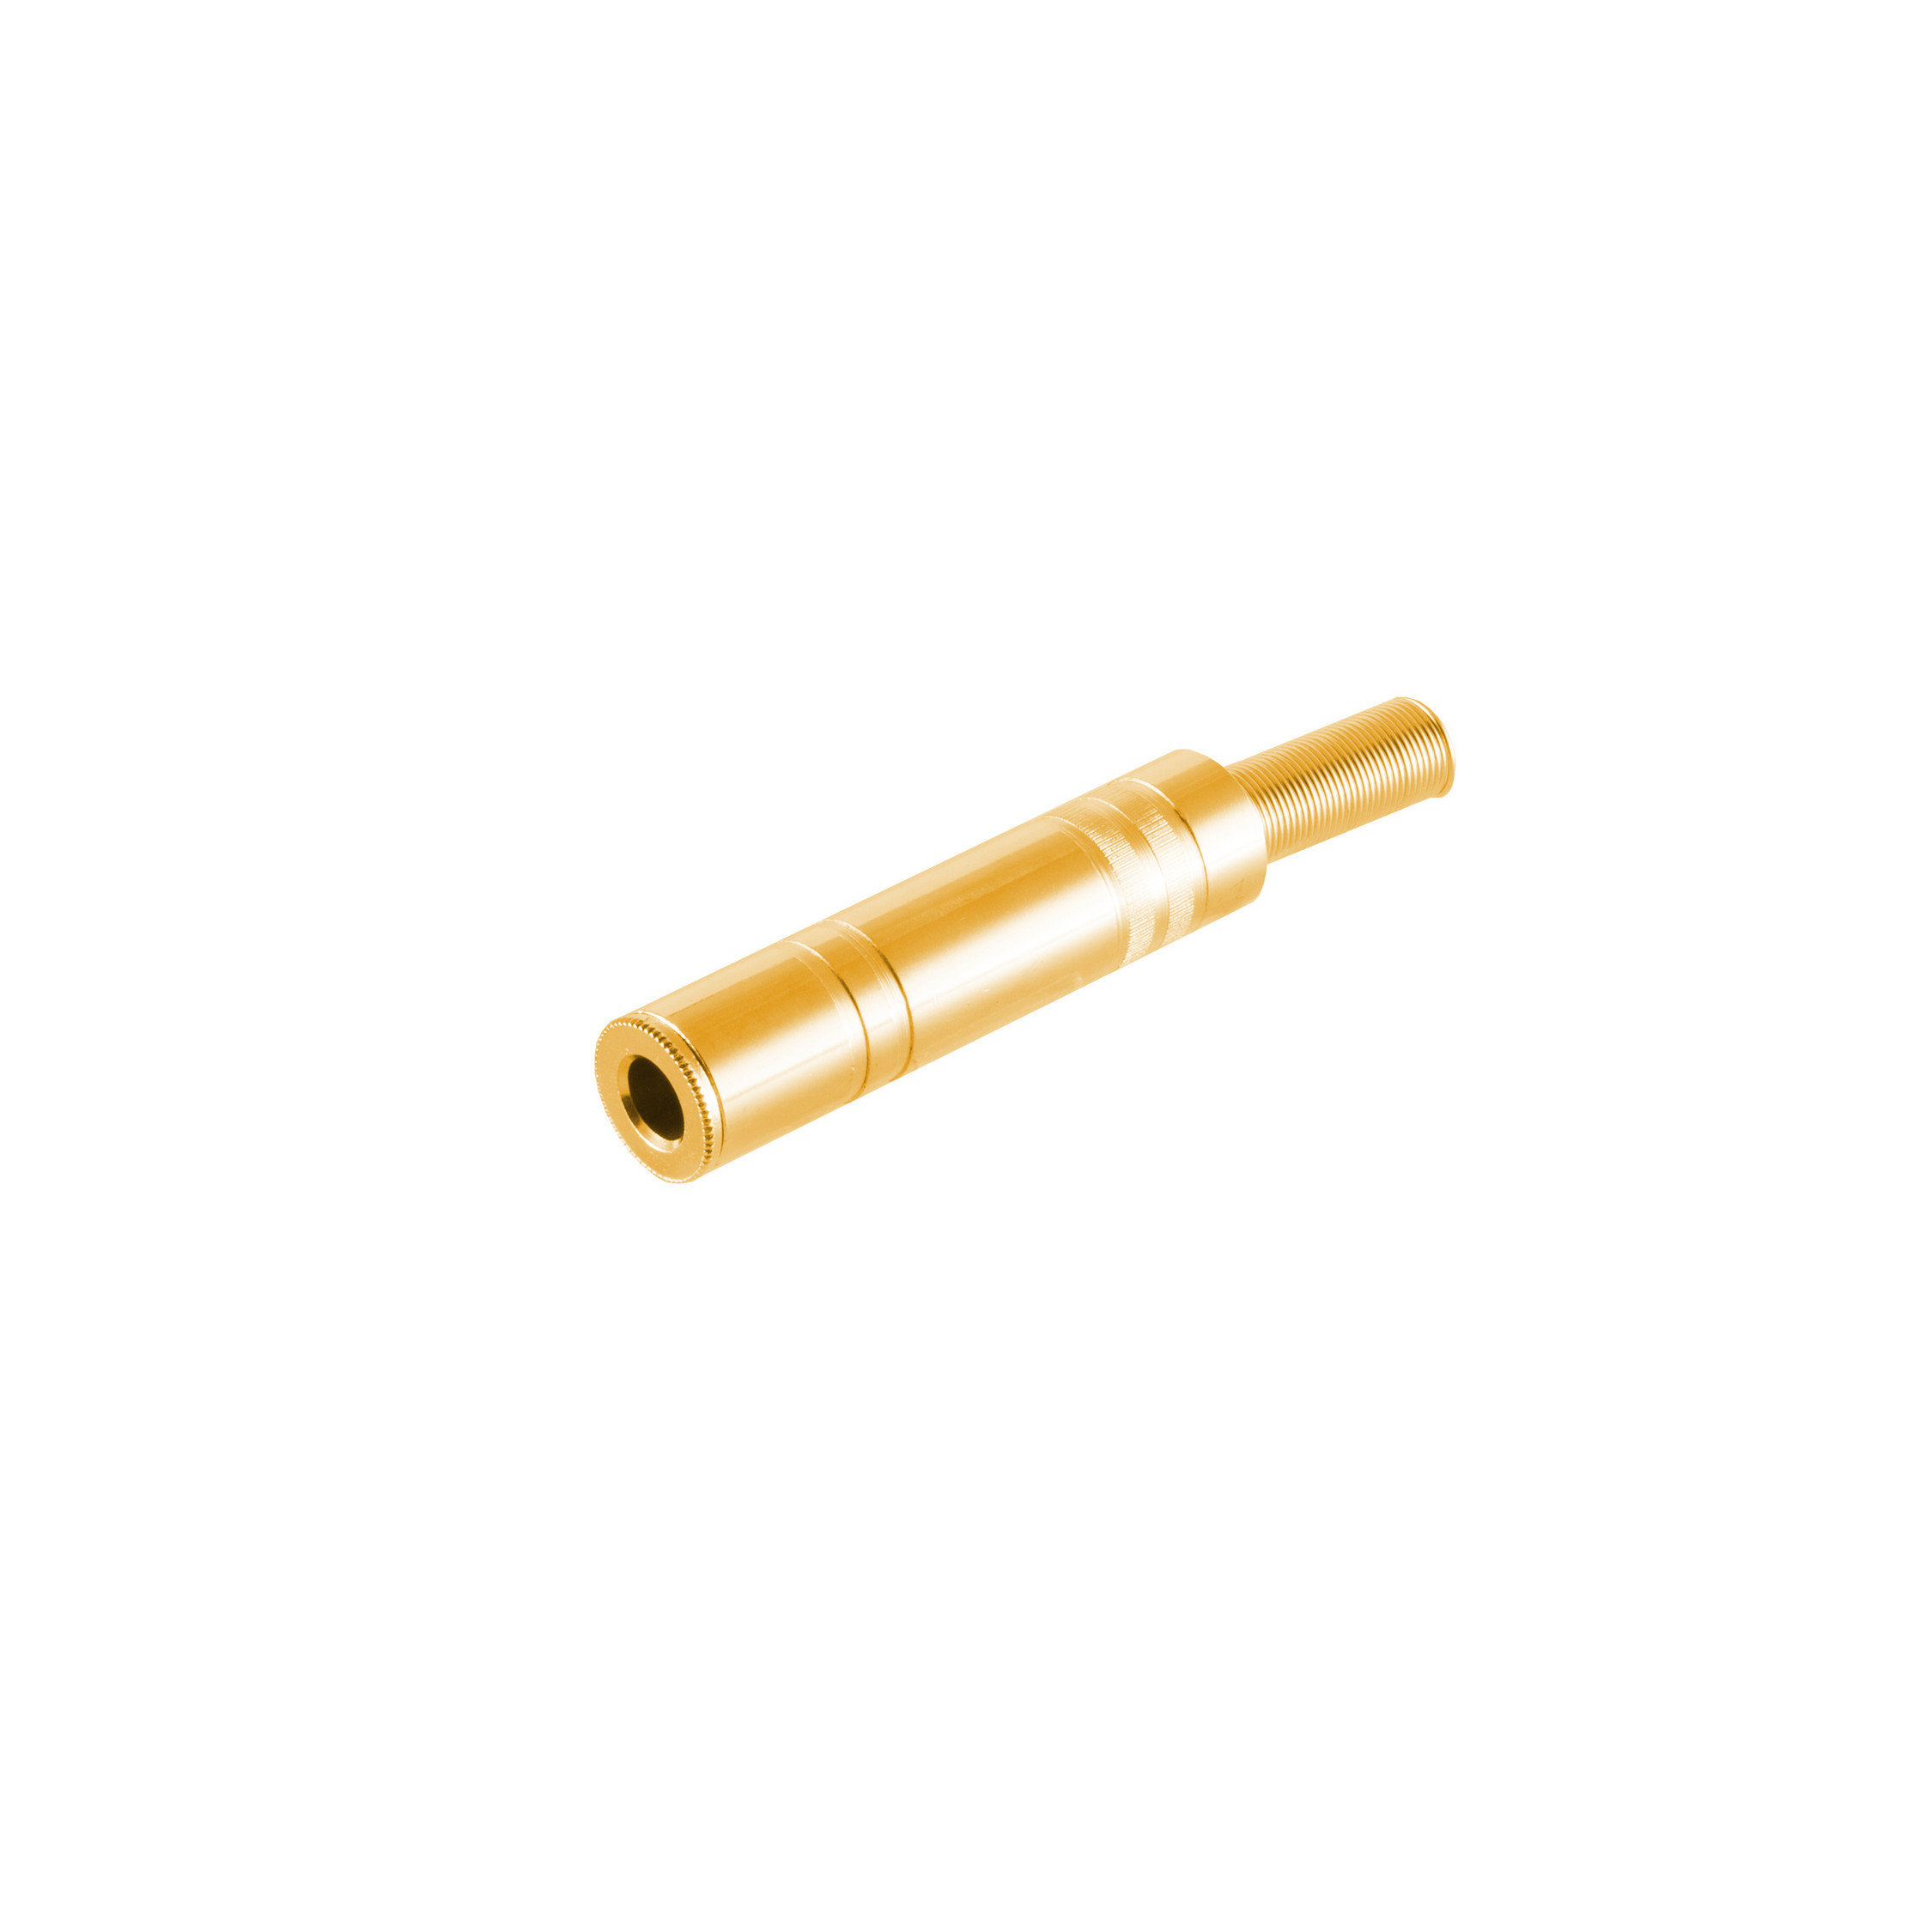 Stereo 6,3mm, CONNECTIVITY S/CONN Metall, Klinke Klinkenkupplung vergoldet MAXIMUM